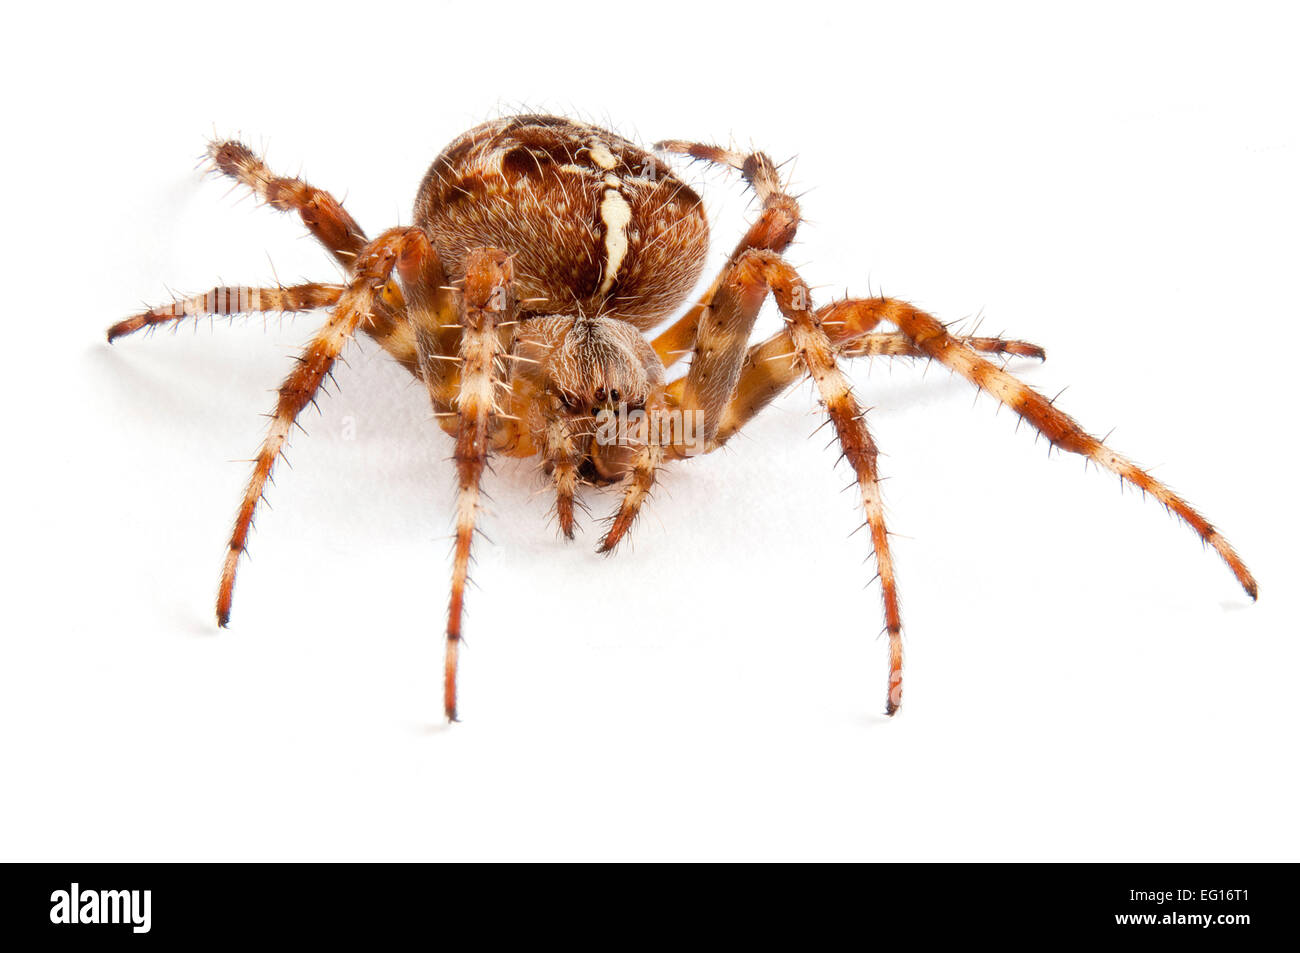 Bt9tfe Araneous Diadenatus Common Garden Spider Uk On White Stock